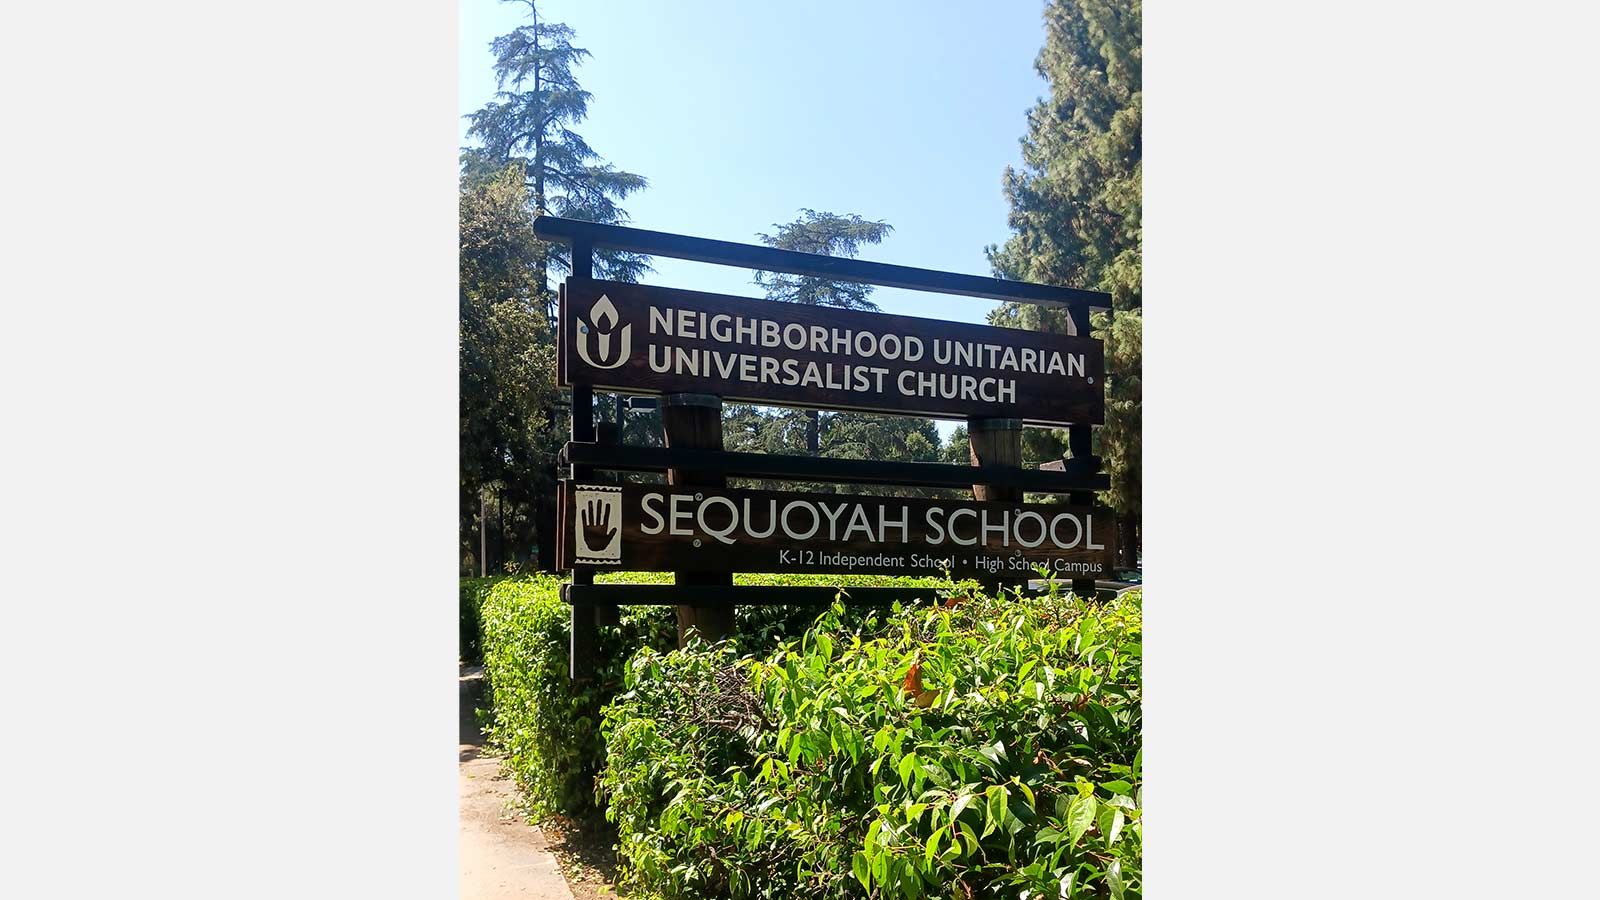 Sequoyah School wooden sign installed outdoors